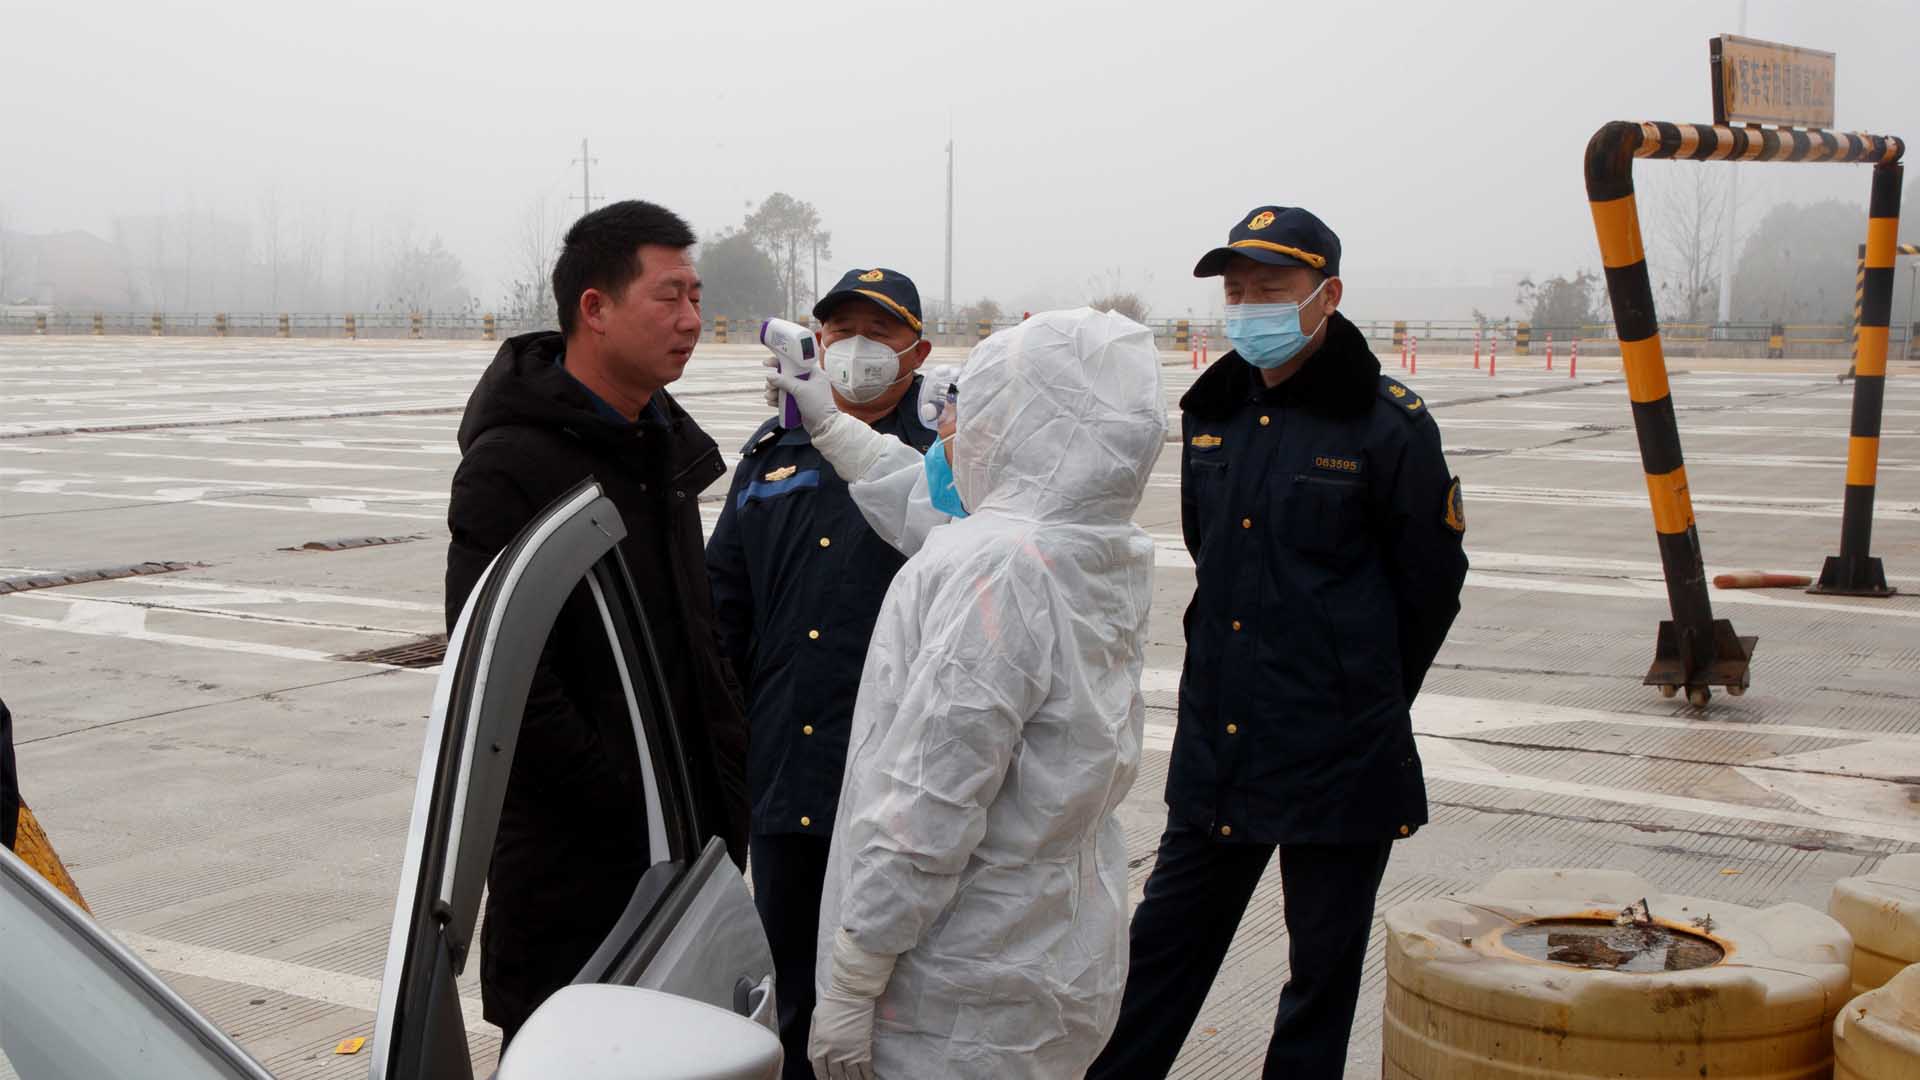 El coronavirus deja ya más de 100 muertos en China mientras los extranjeros se preparan para ser evacuados